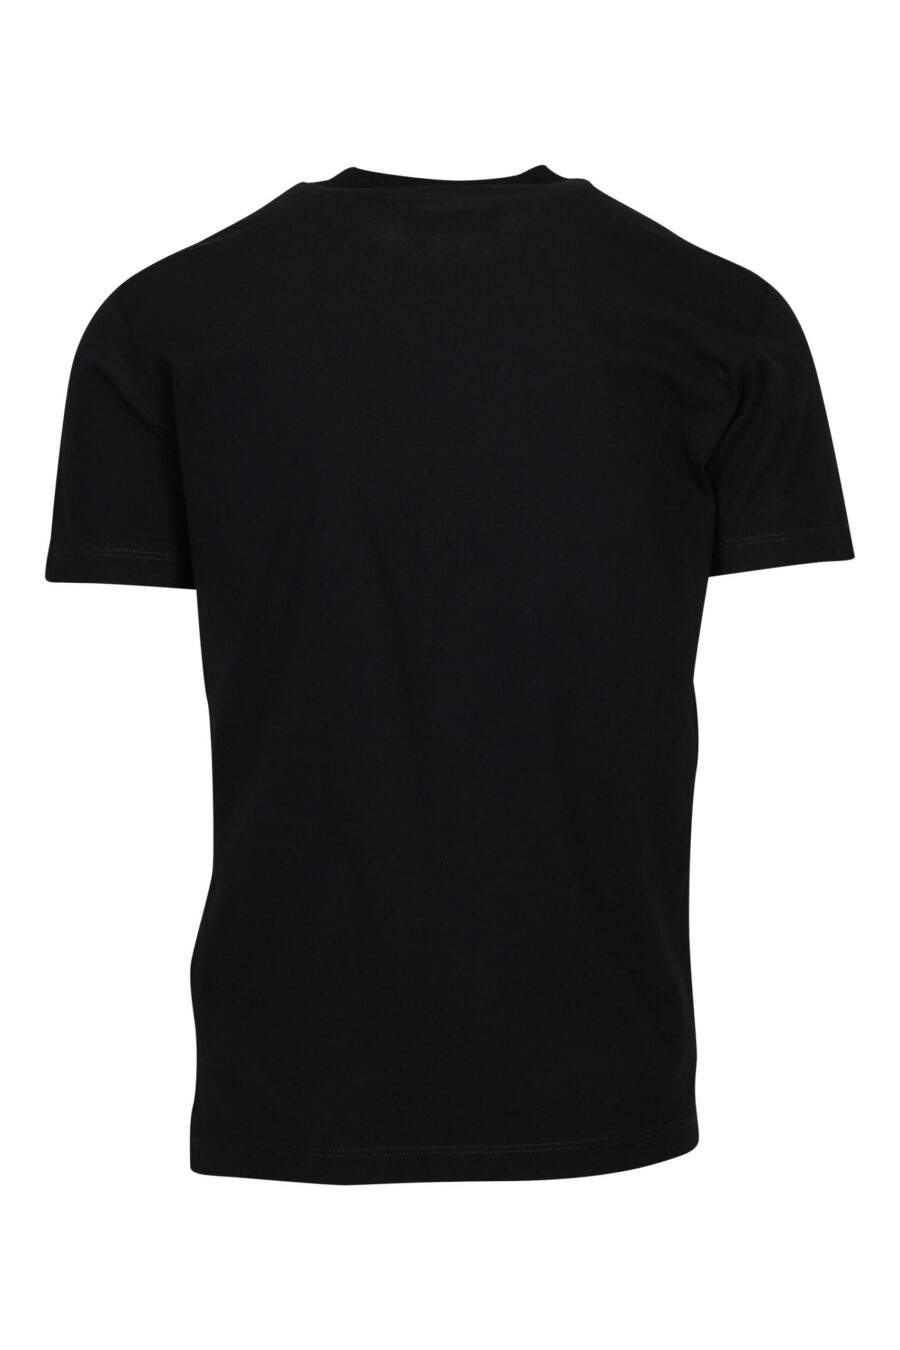 Black T-shirt with folded "milano" logo - 8054148571047 1 scaled